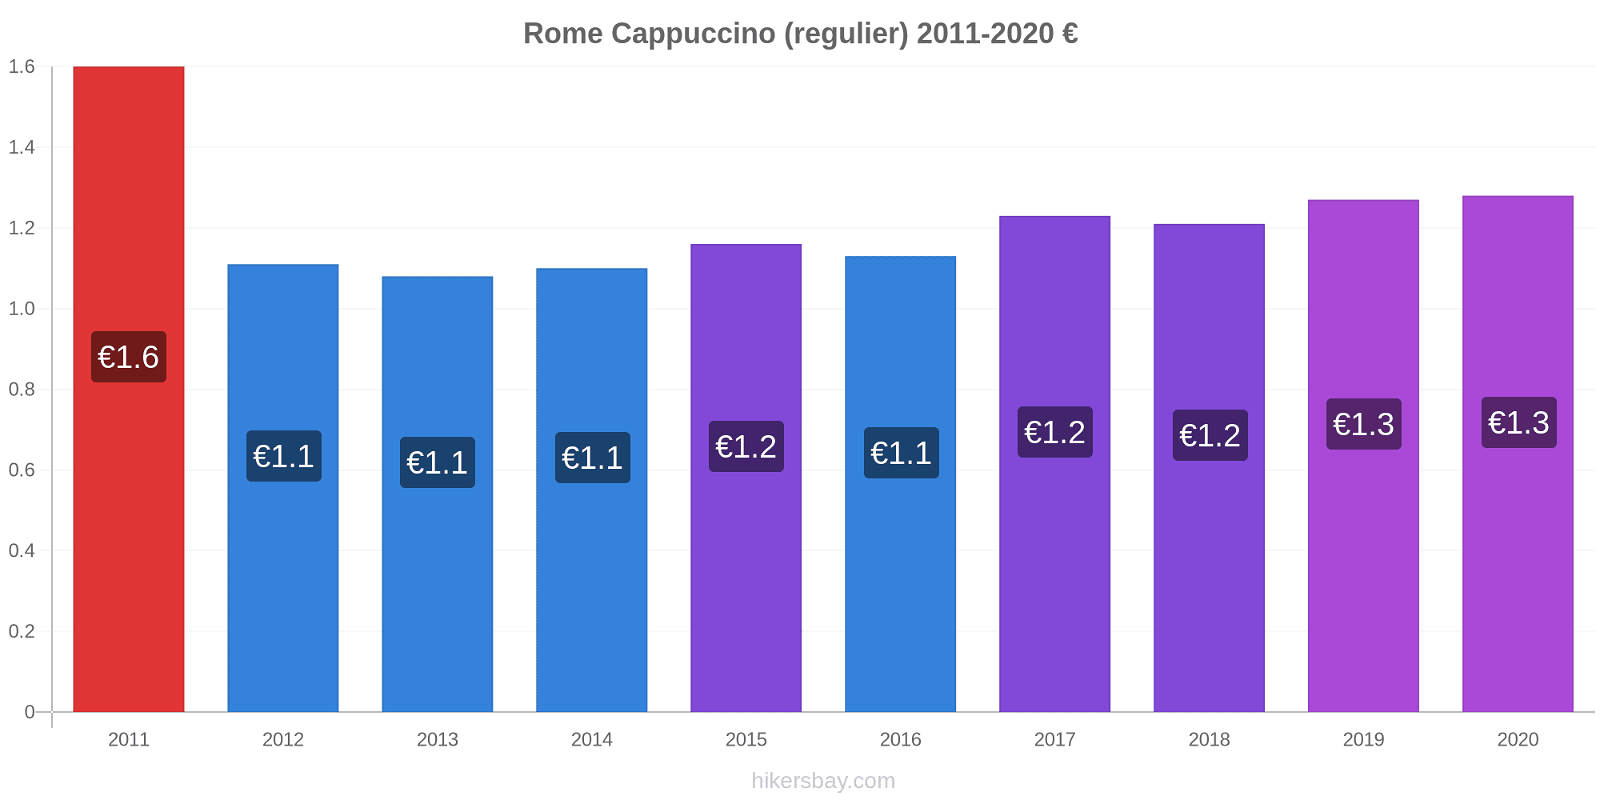 Rome prijswijzigingen Cappuccino (regelmatige) hikersbay.com